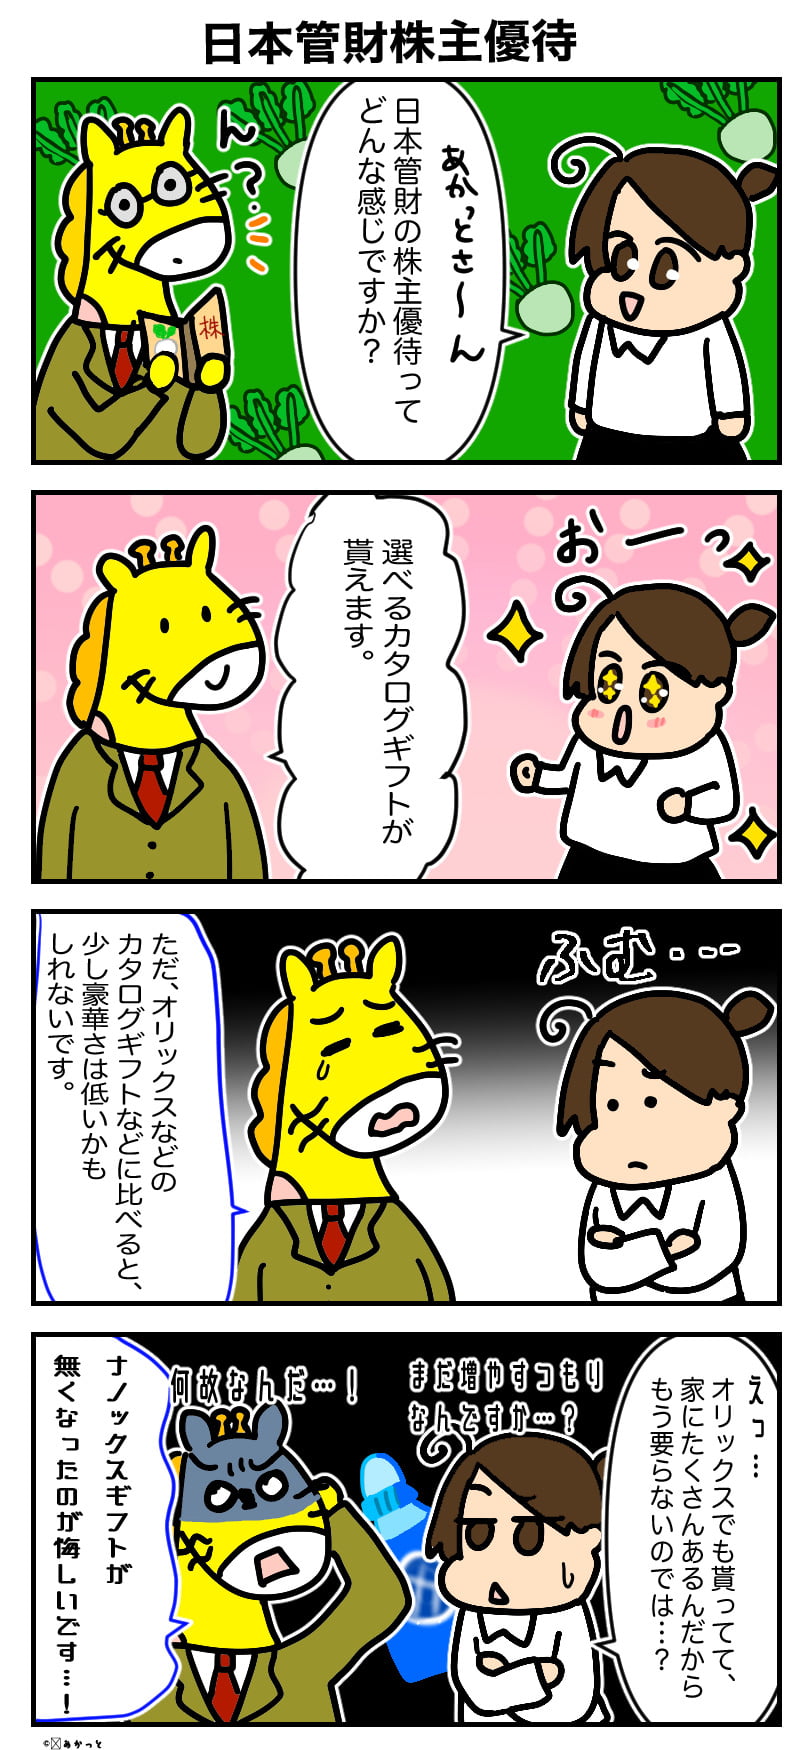 日本管財(9728)株主優待解説漫画